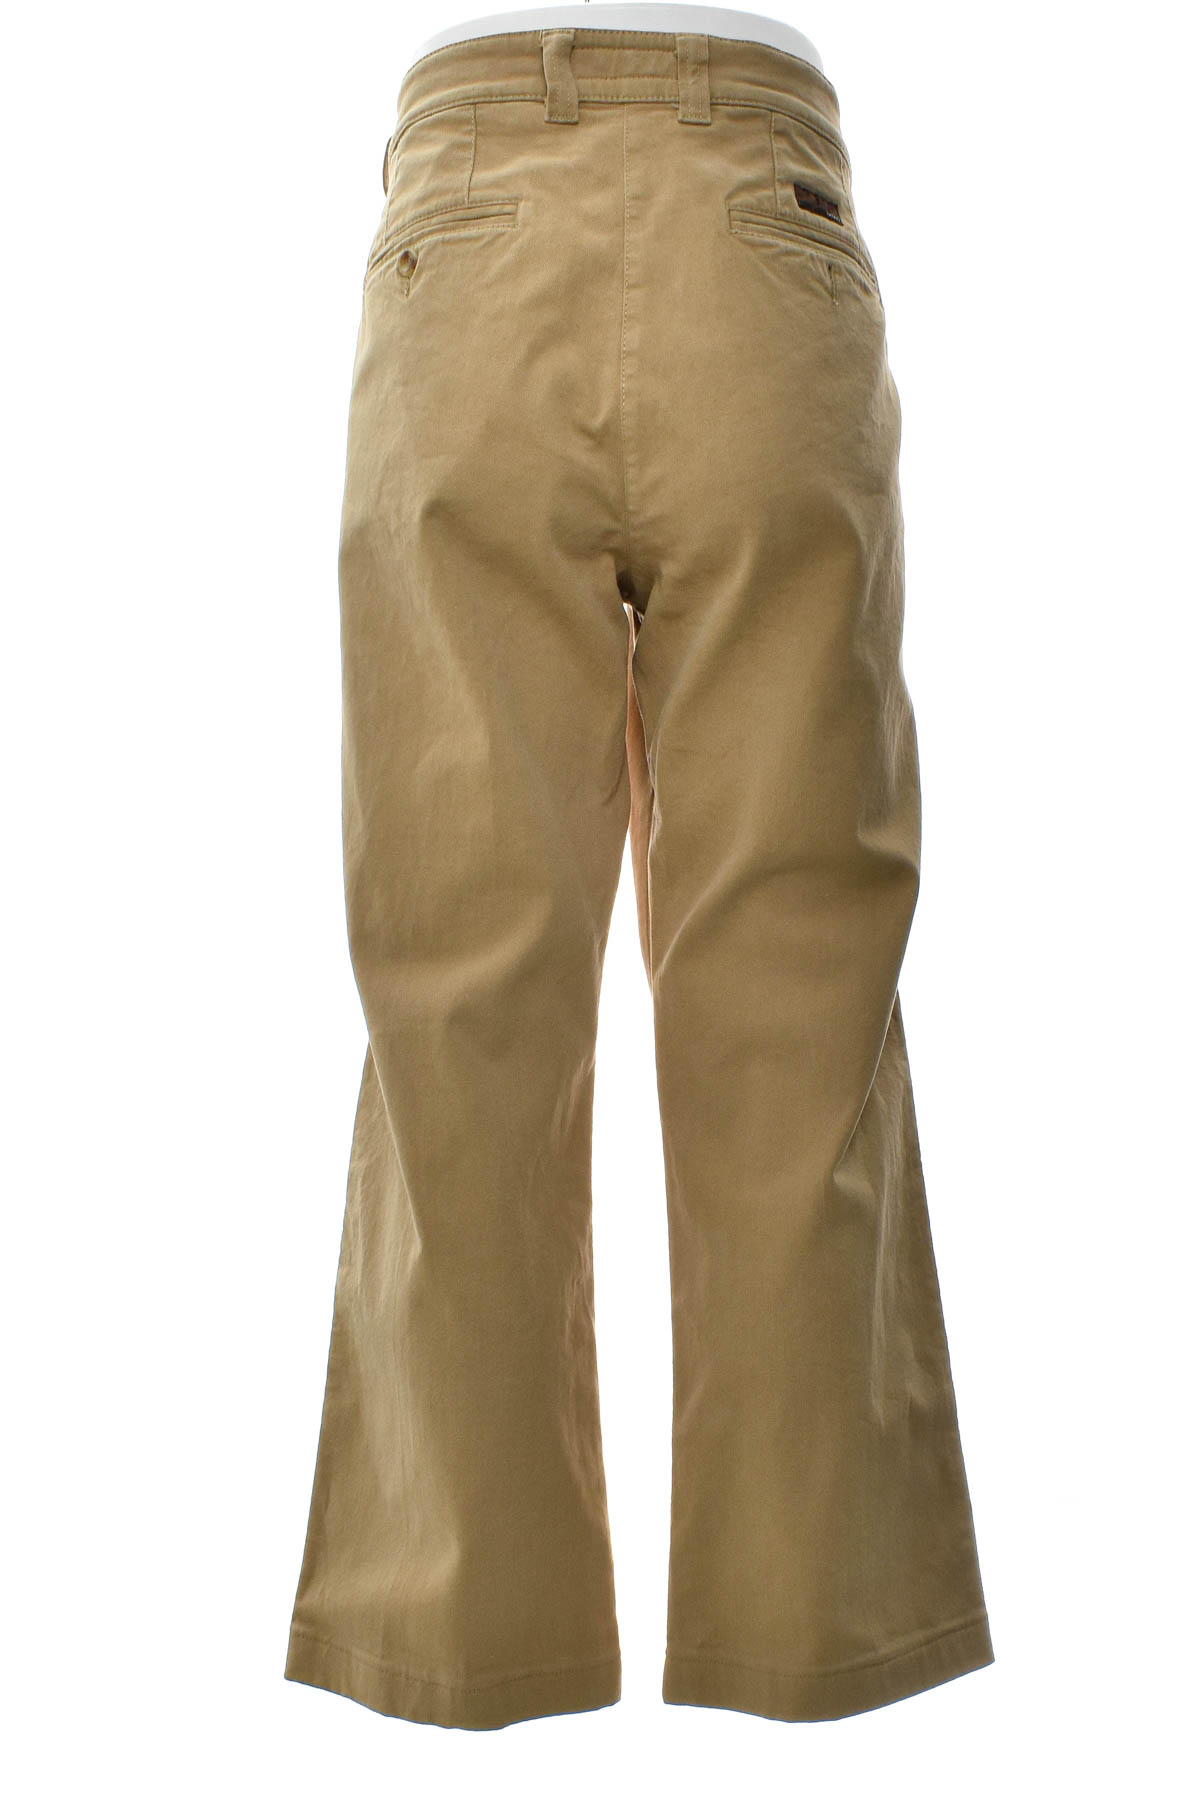 Pantalon pentru bărbați - MAC - 1